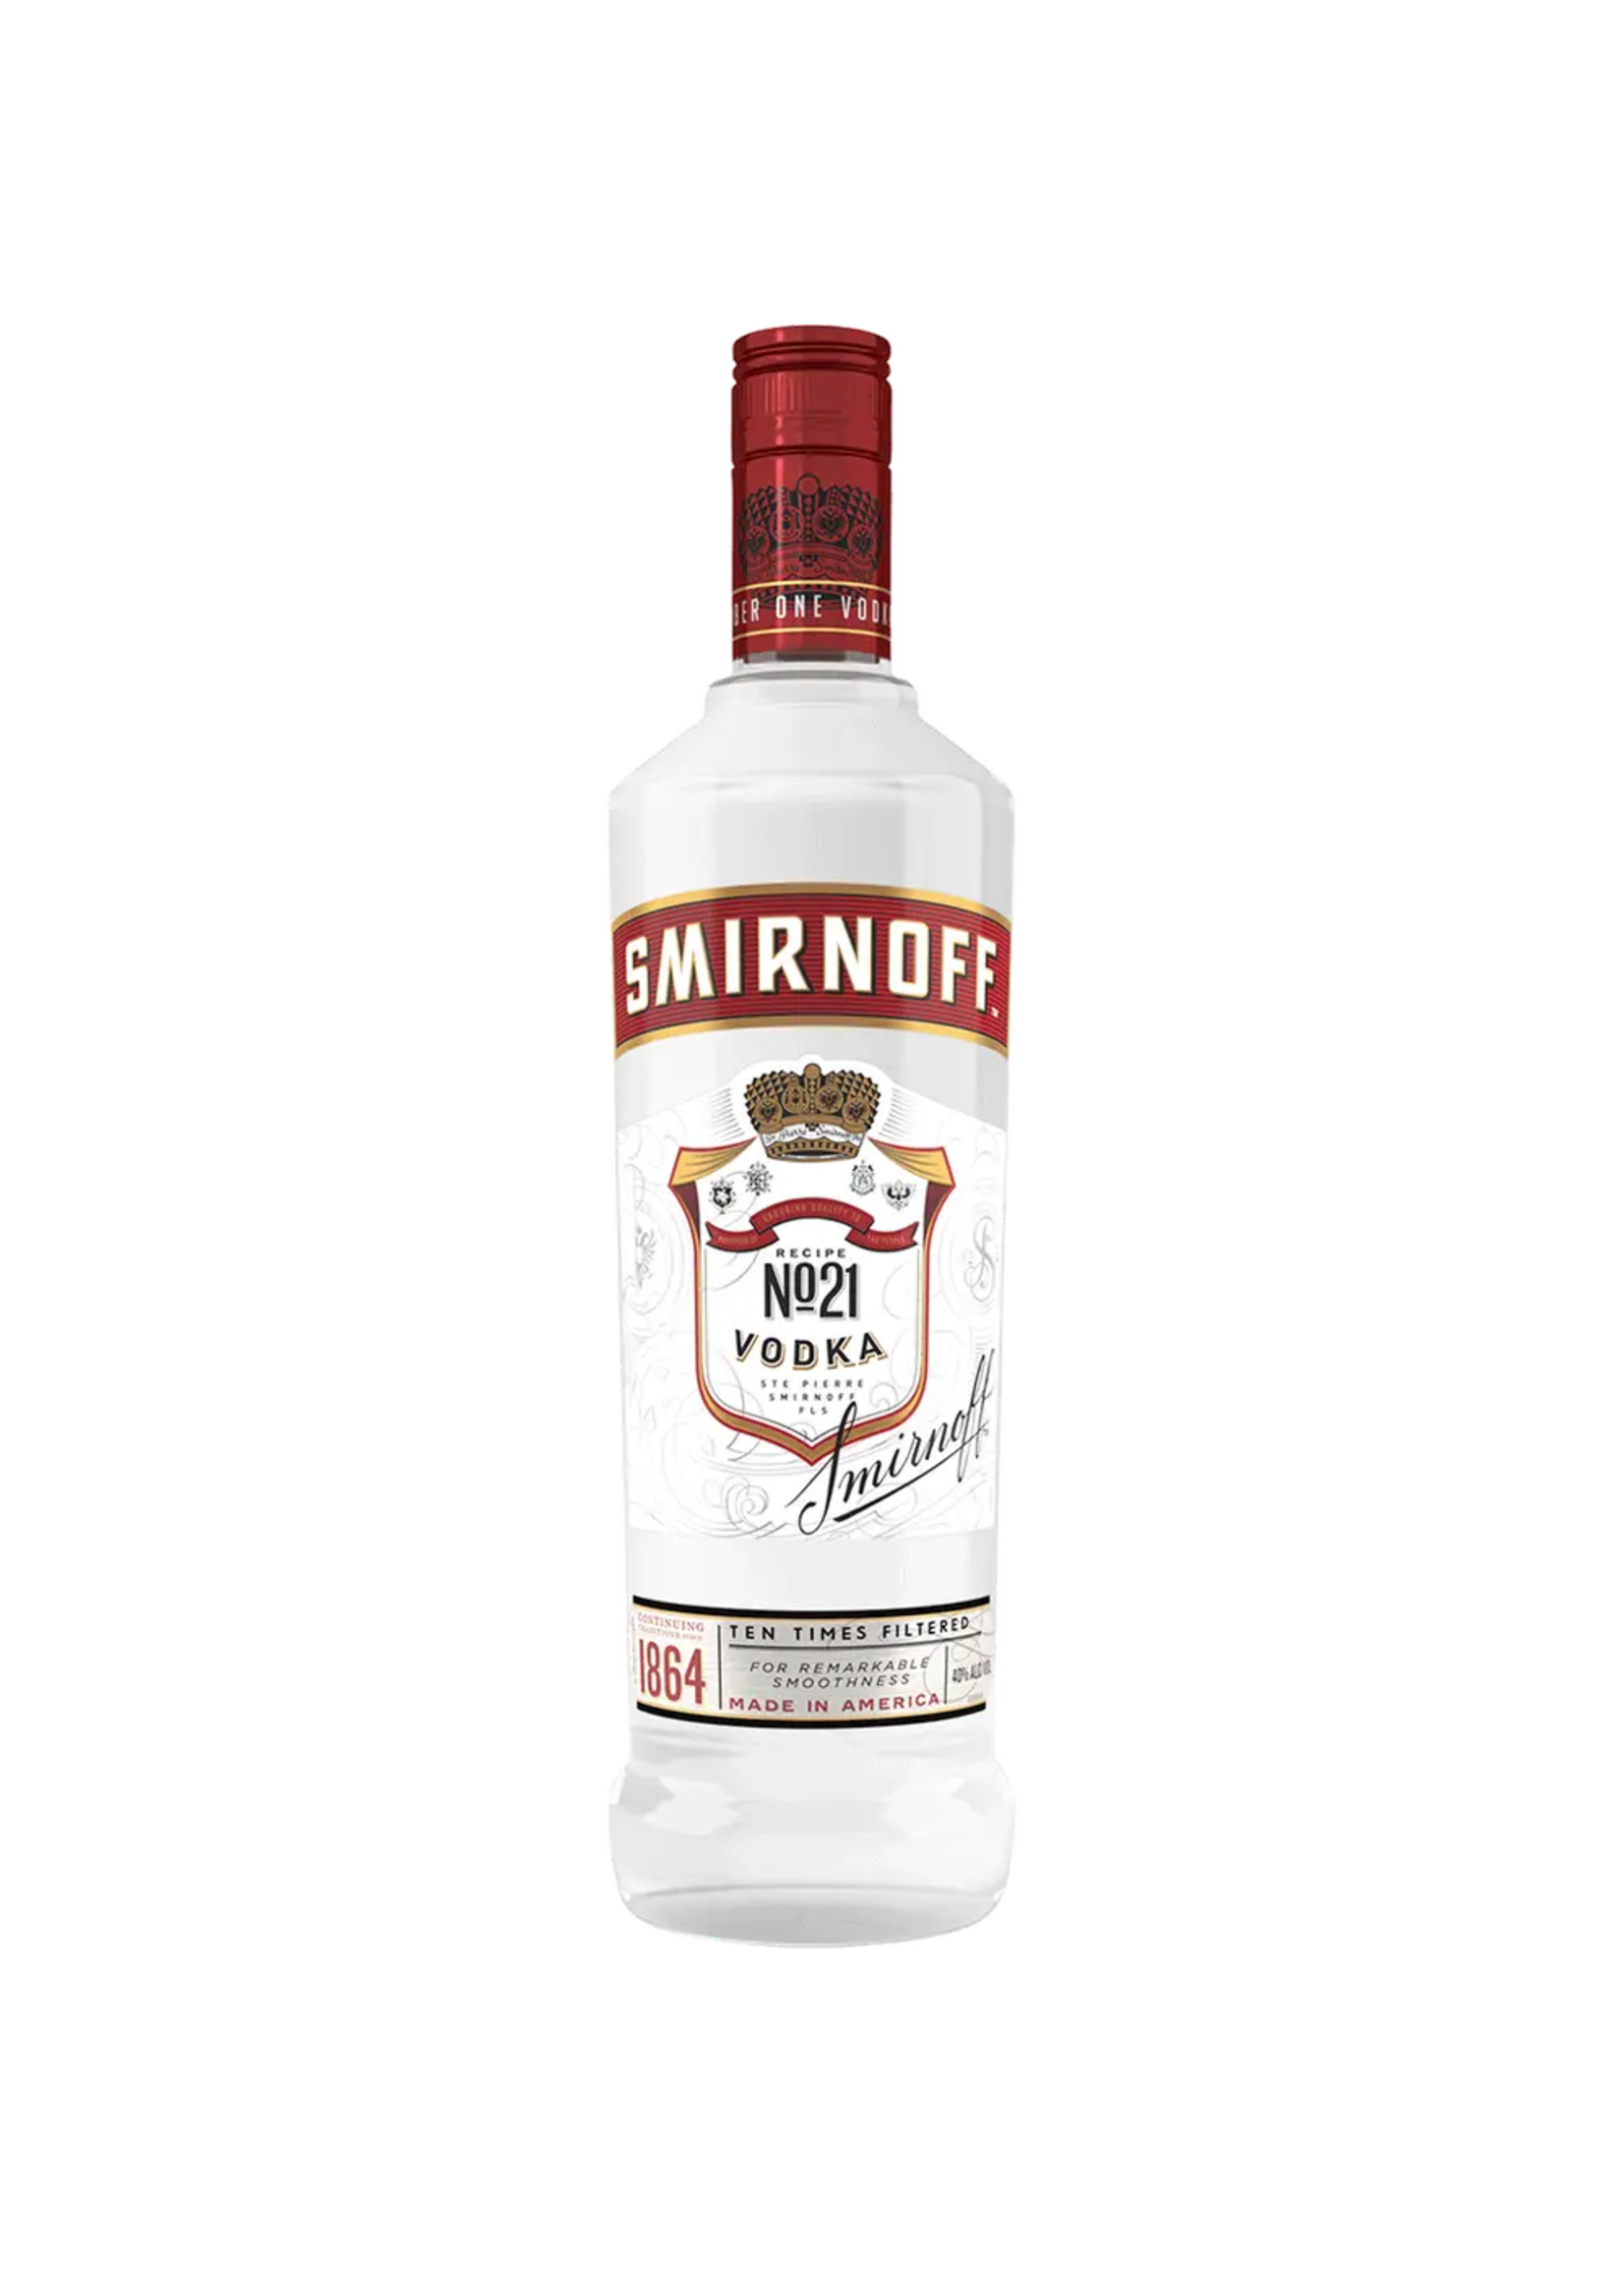 Smirnoff Original Vodka 80Proof 750ml